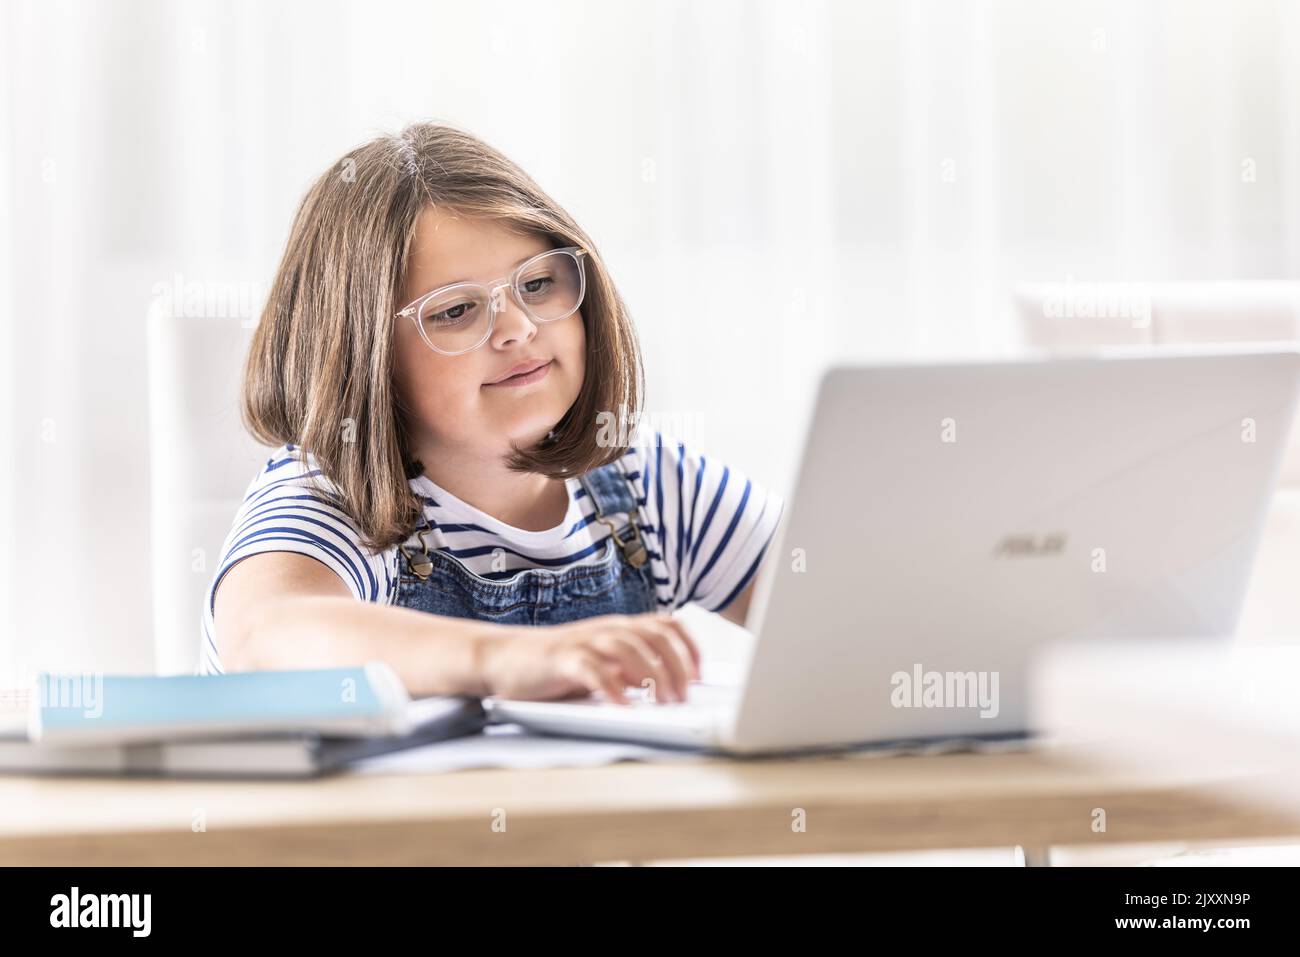 Una ragazza con la faccia rotonda che indossa gli occhiali si trova dietro un notebook che lo guarda dentro. Foto Stock